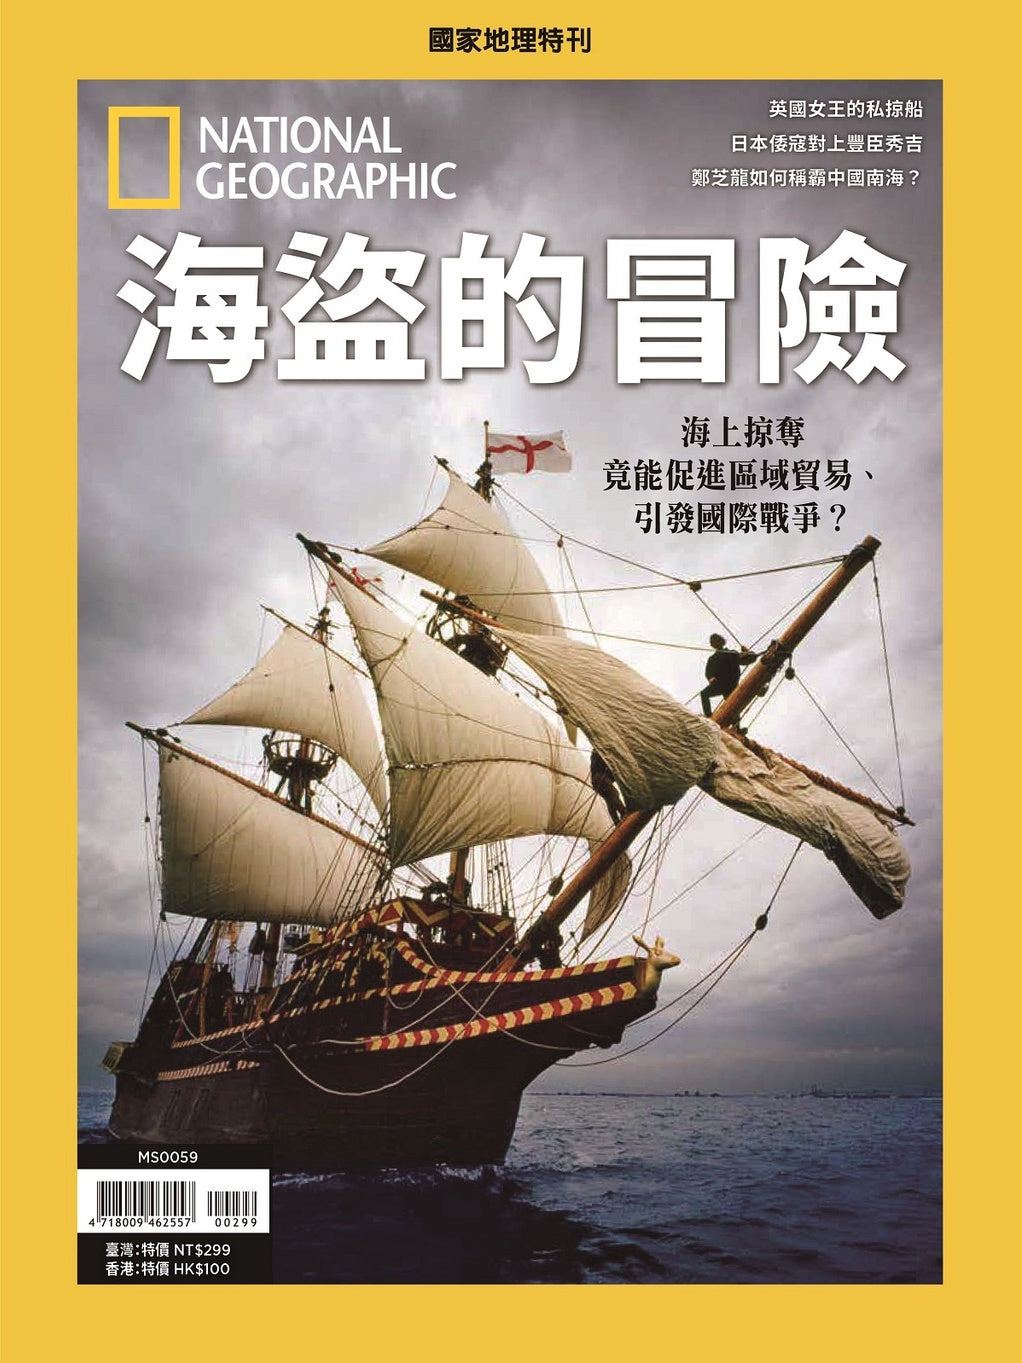 國家地理雜誌 中文版 紙本 訂閱 1年12期 合購 《海盜的冒險》特刊